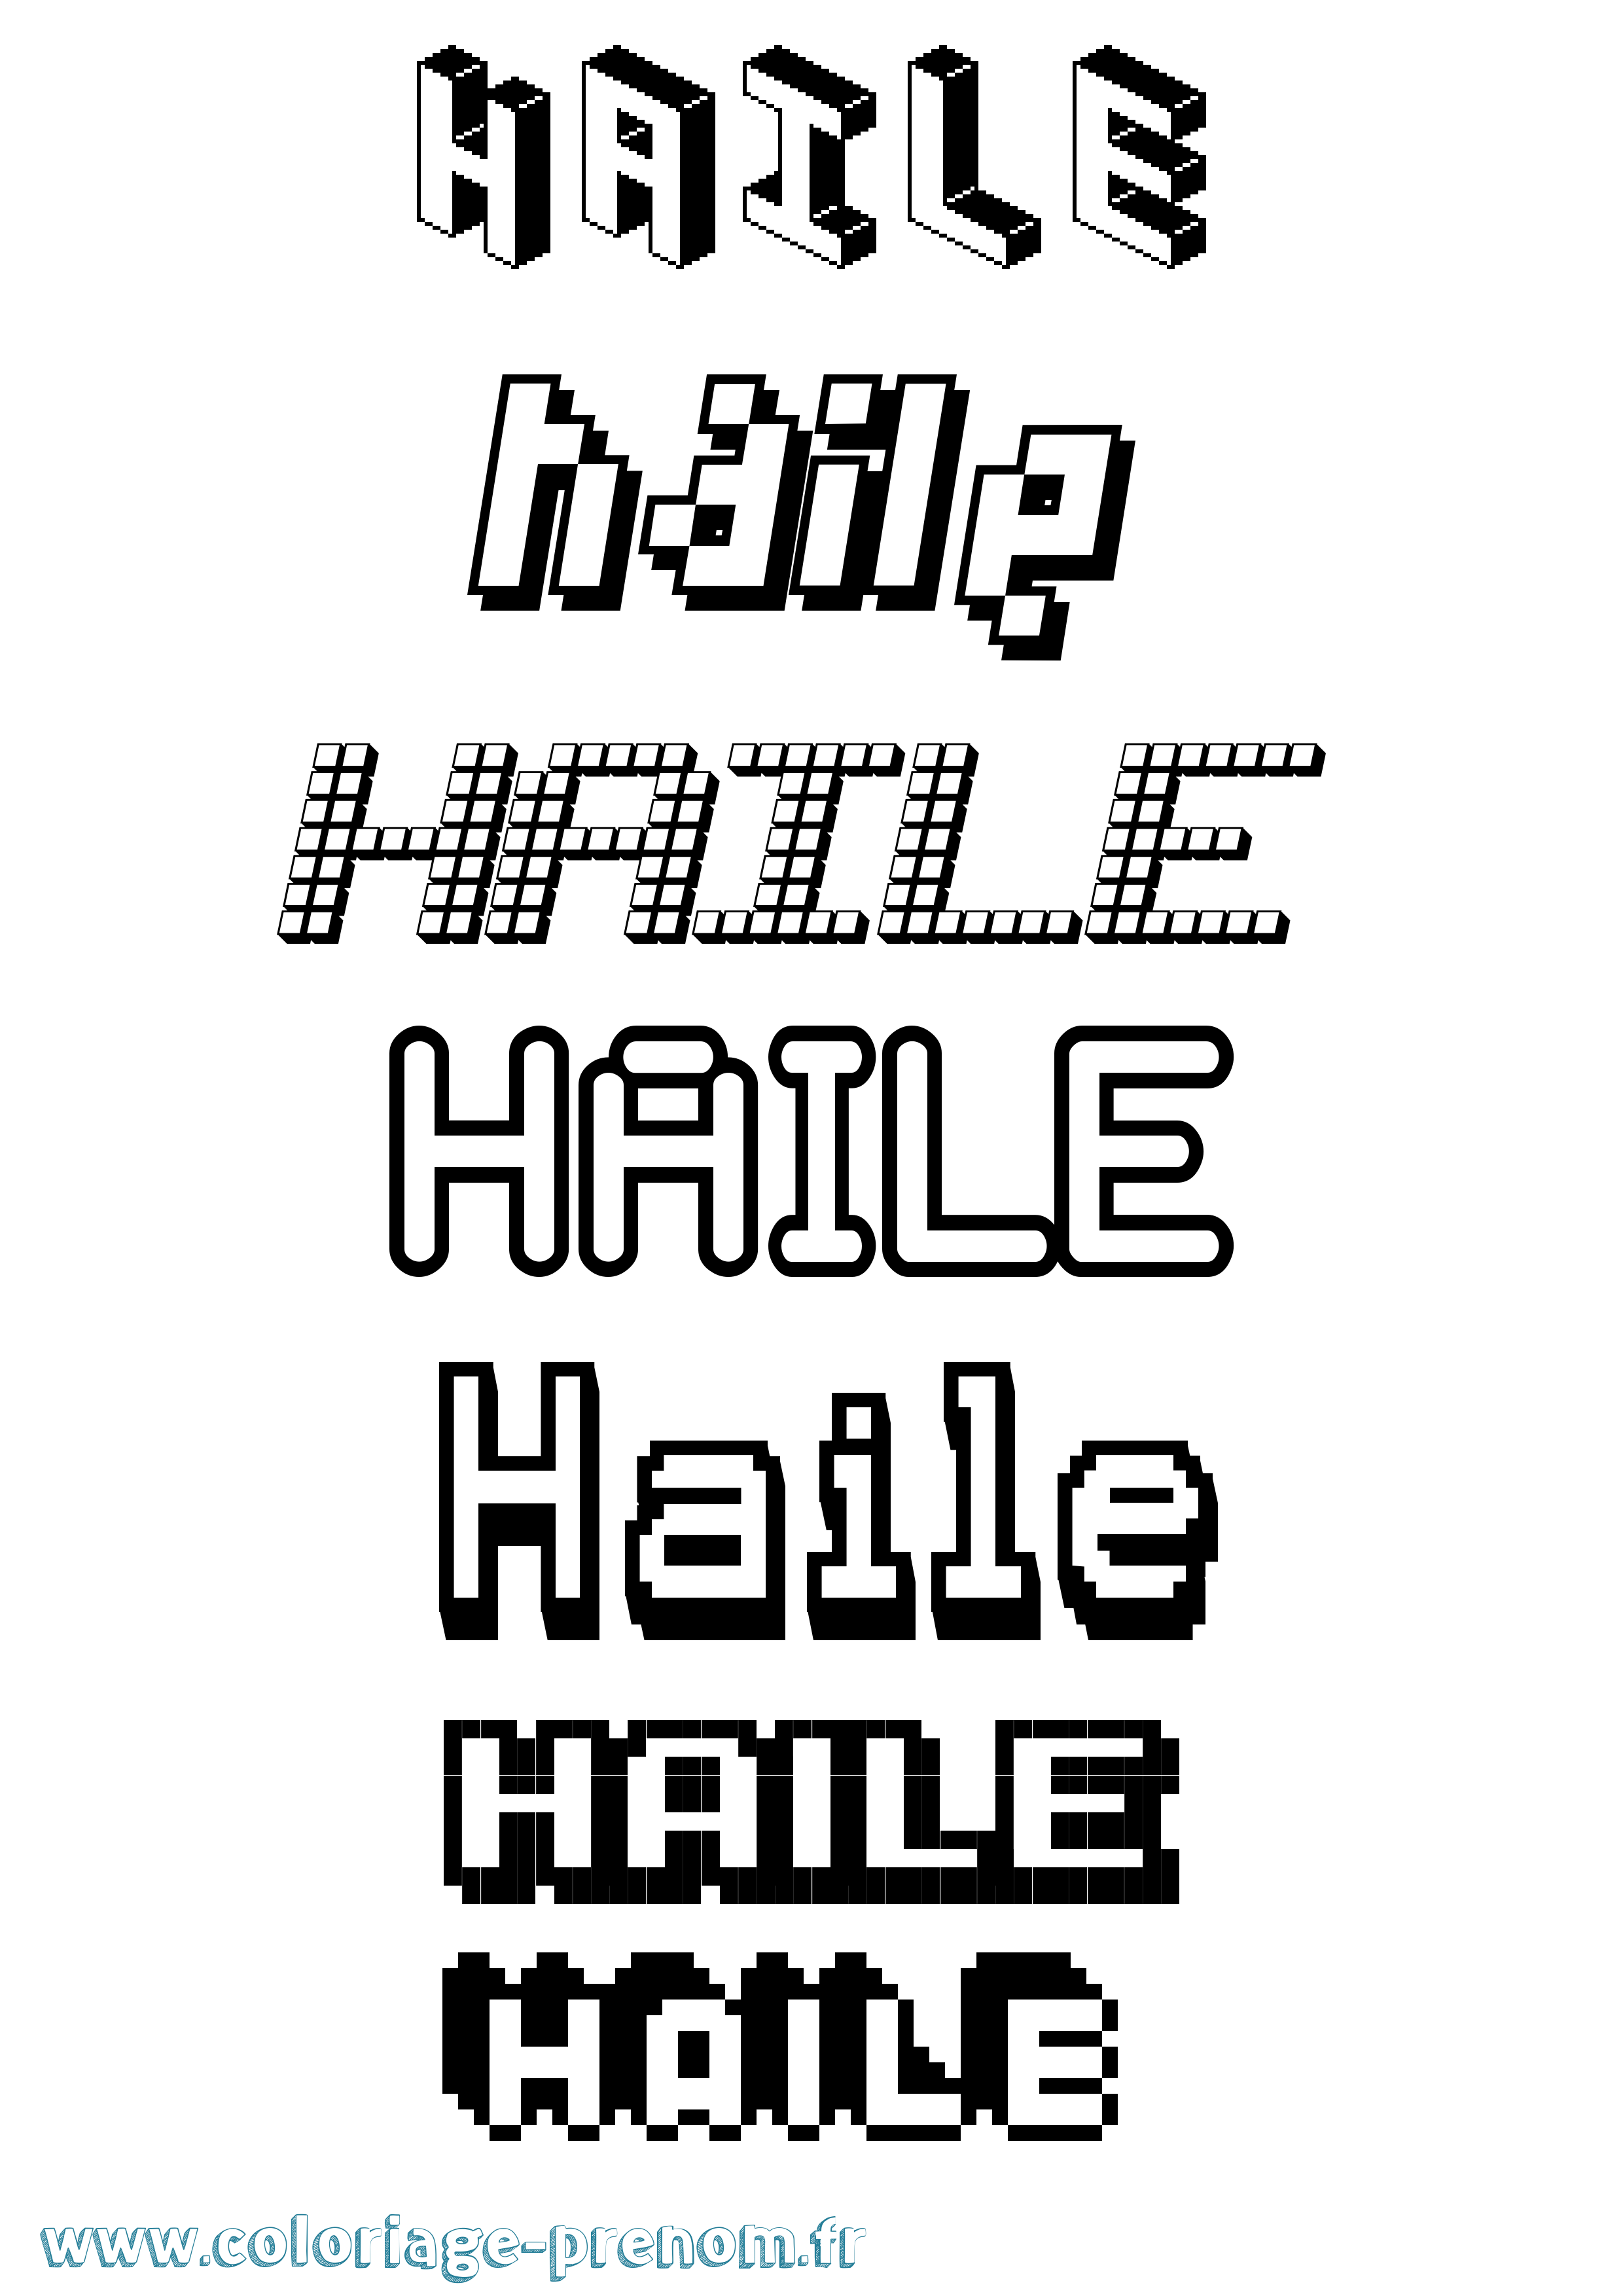 Coloriage prénom Haile Pixel